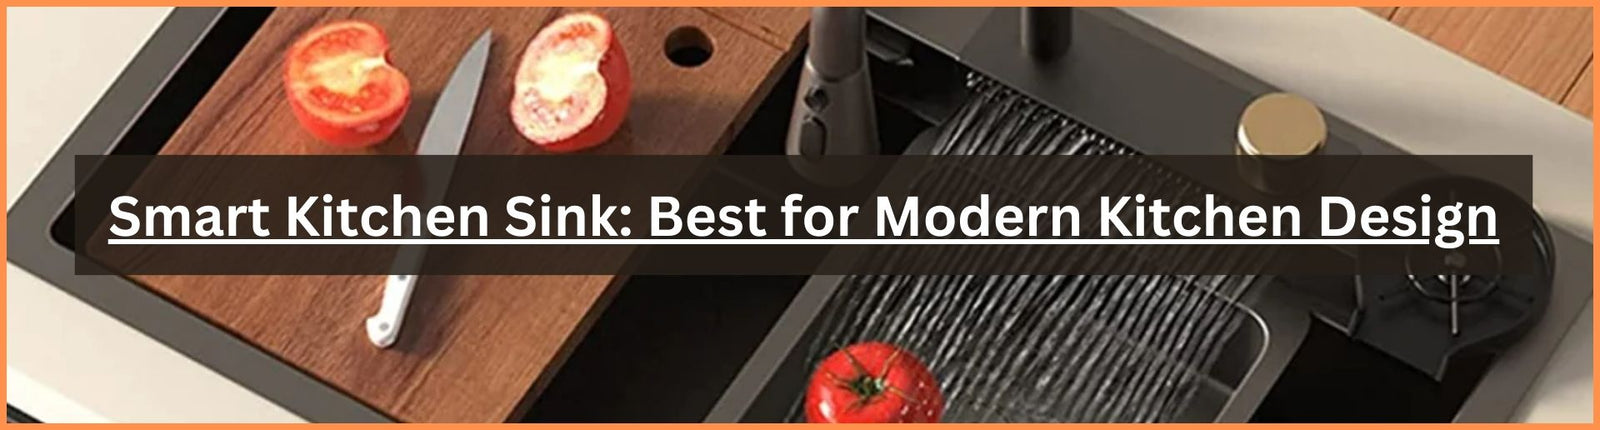 Smart Kitchen Sink Best for Modern Kitchen Design